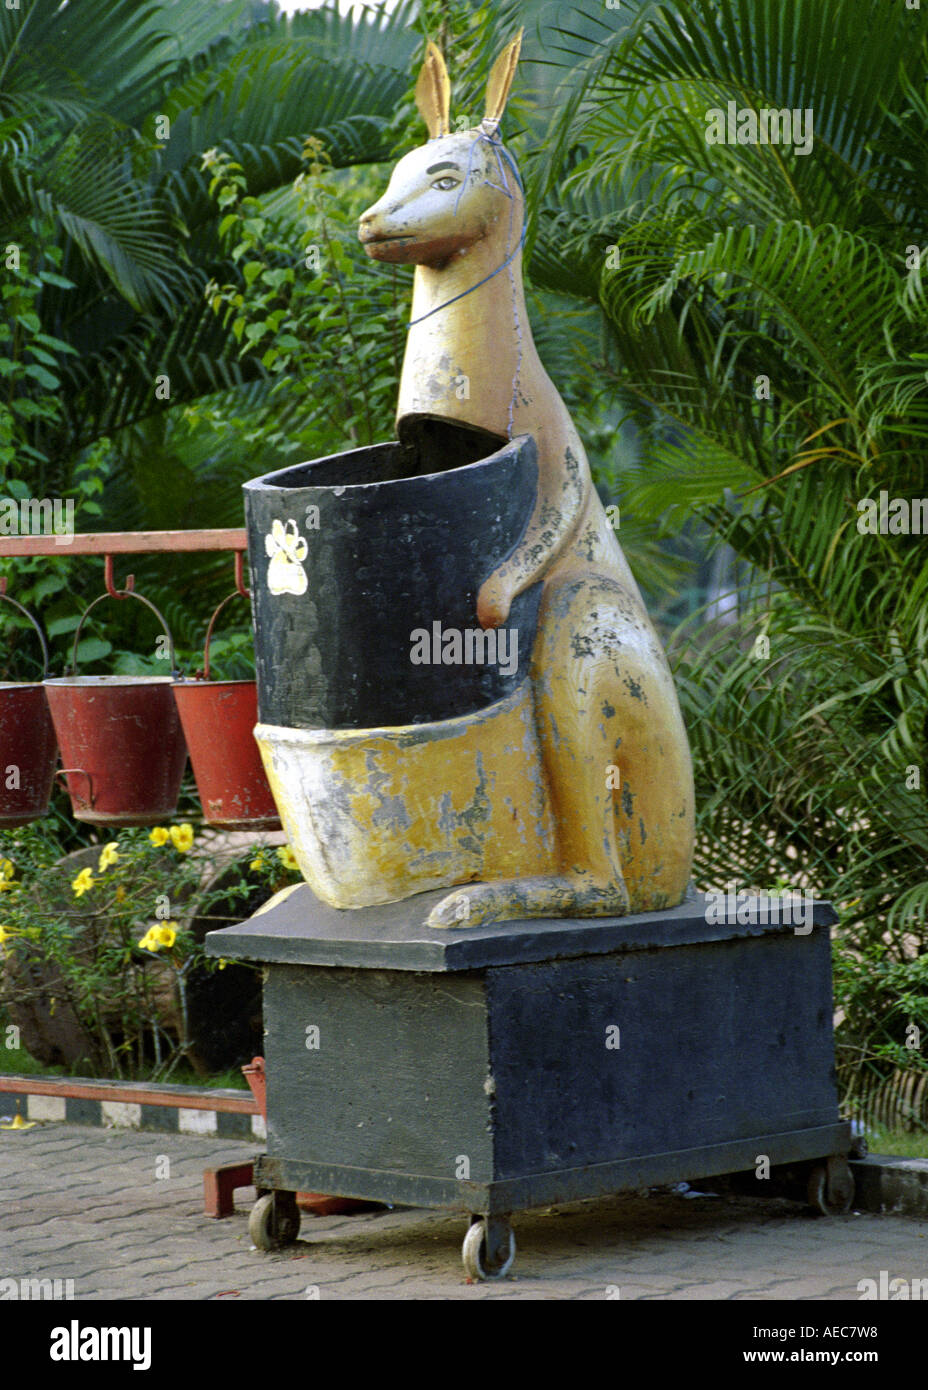 Une poubelle en forme de kangourou près d'une couchette d'essence dans le Kerala Inde Banque D'Images